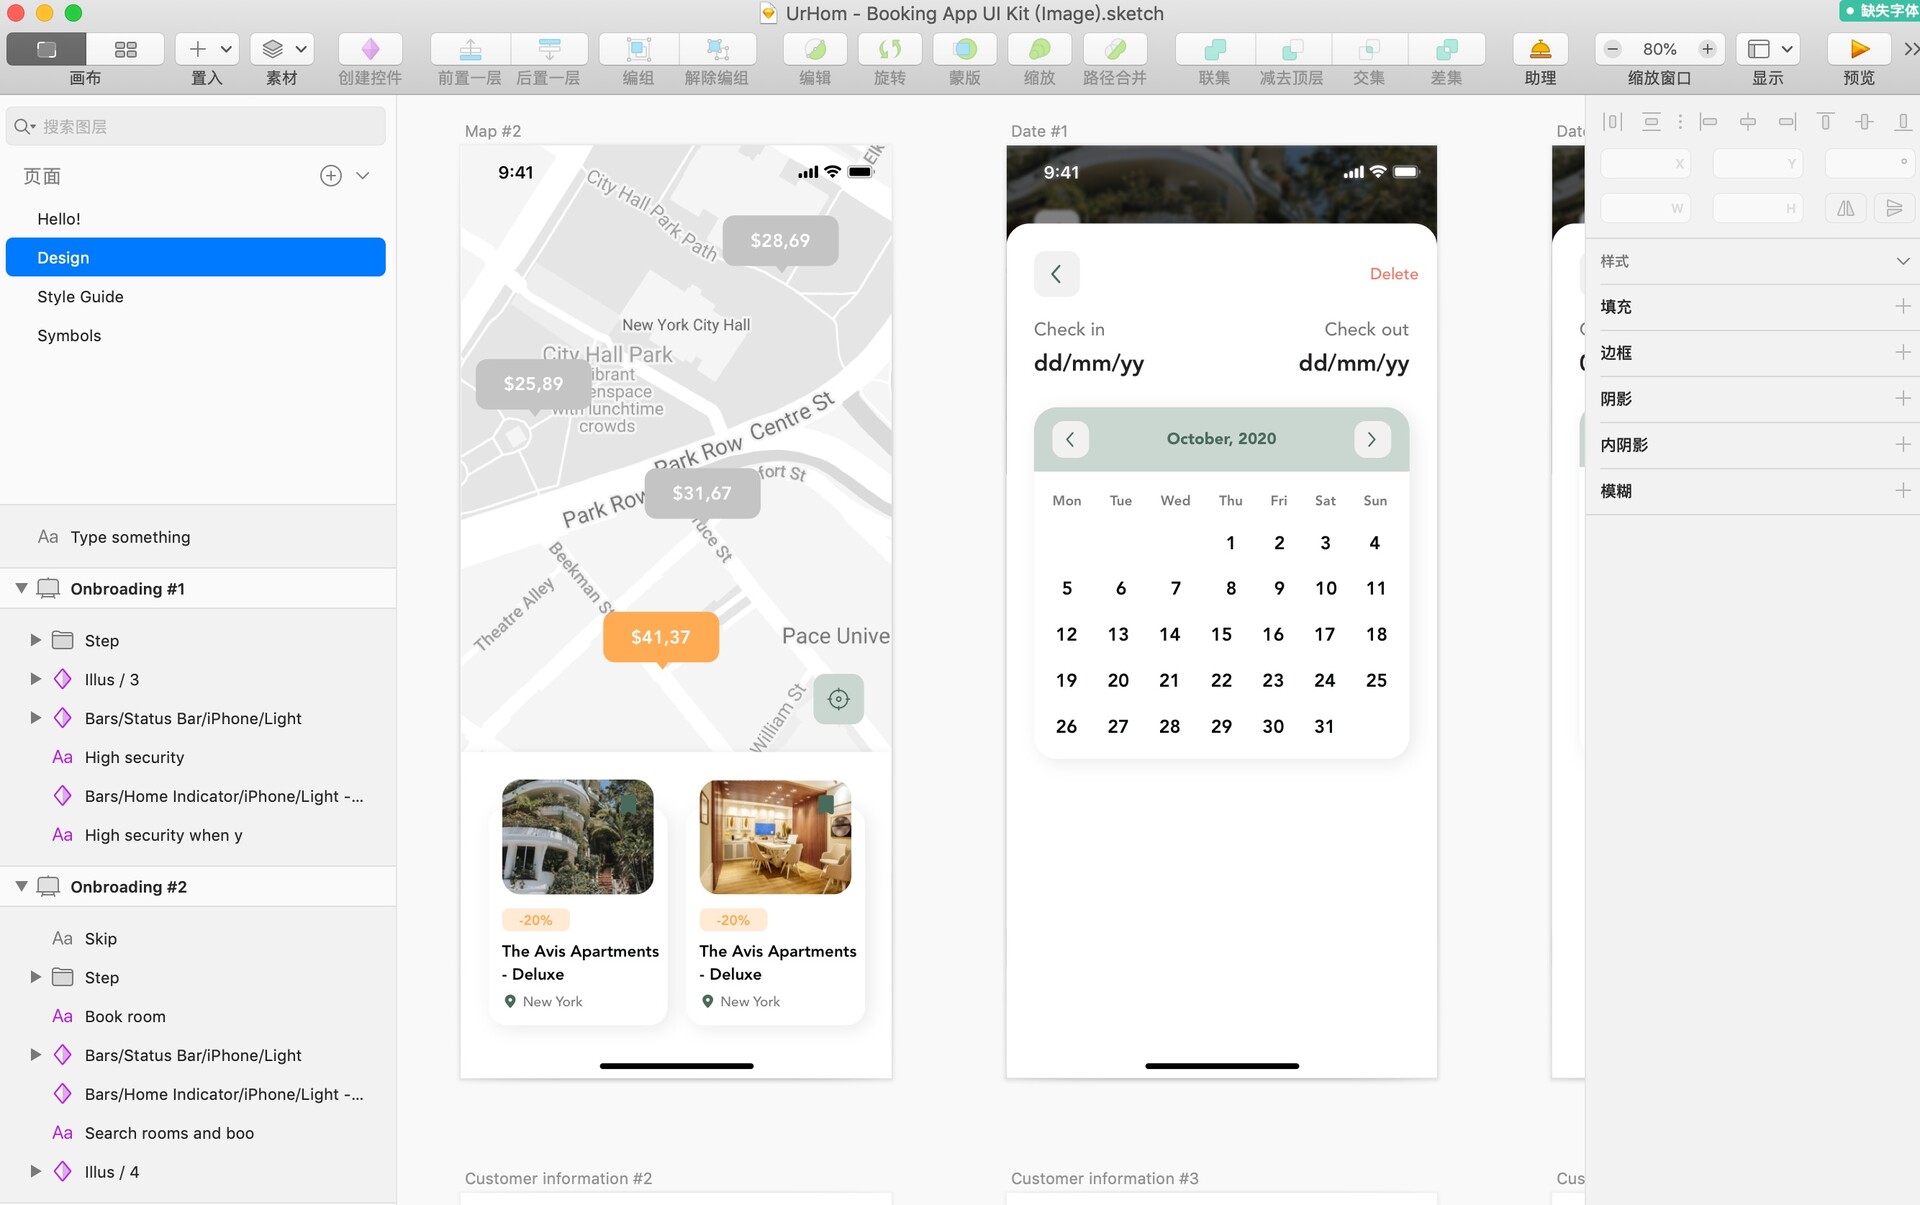 50屏iOS 14在线酒店预订平台应用UI套件模板